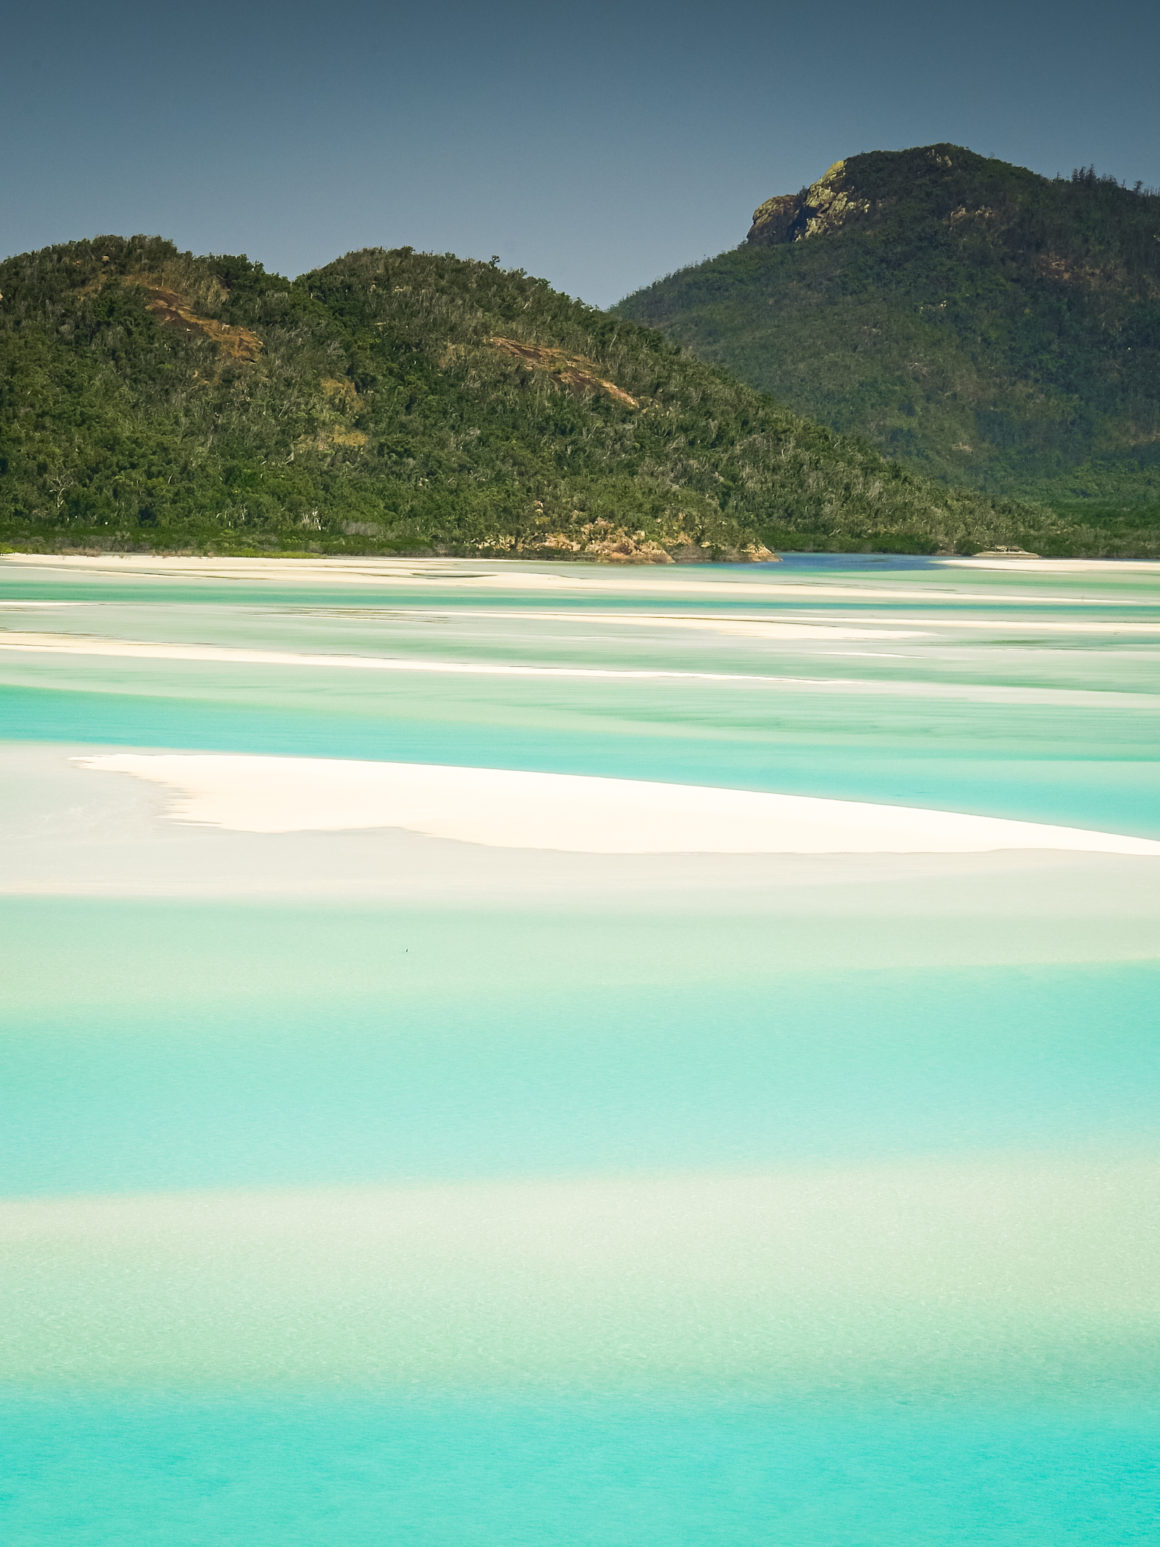 Whitehaven beach, Queensland, Australia © Claire Blumenfeld